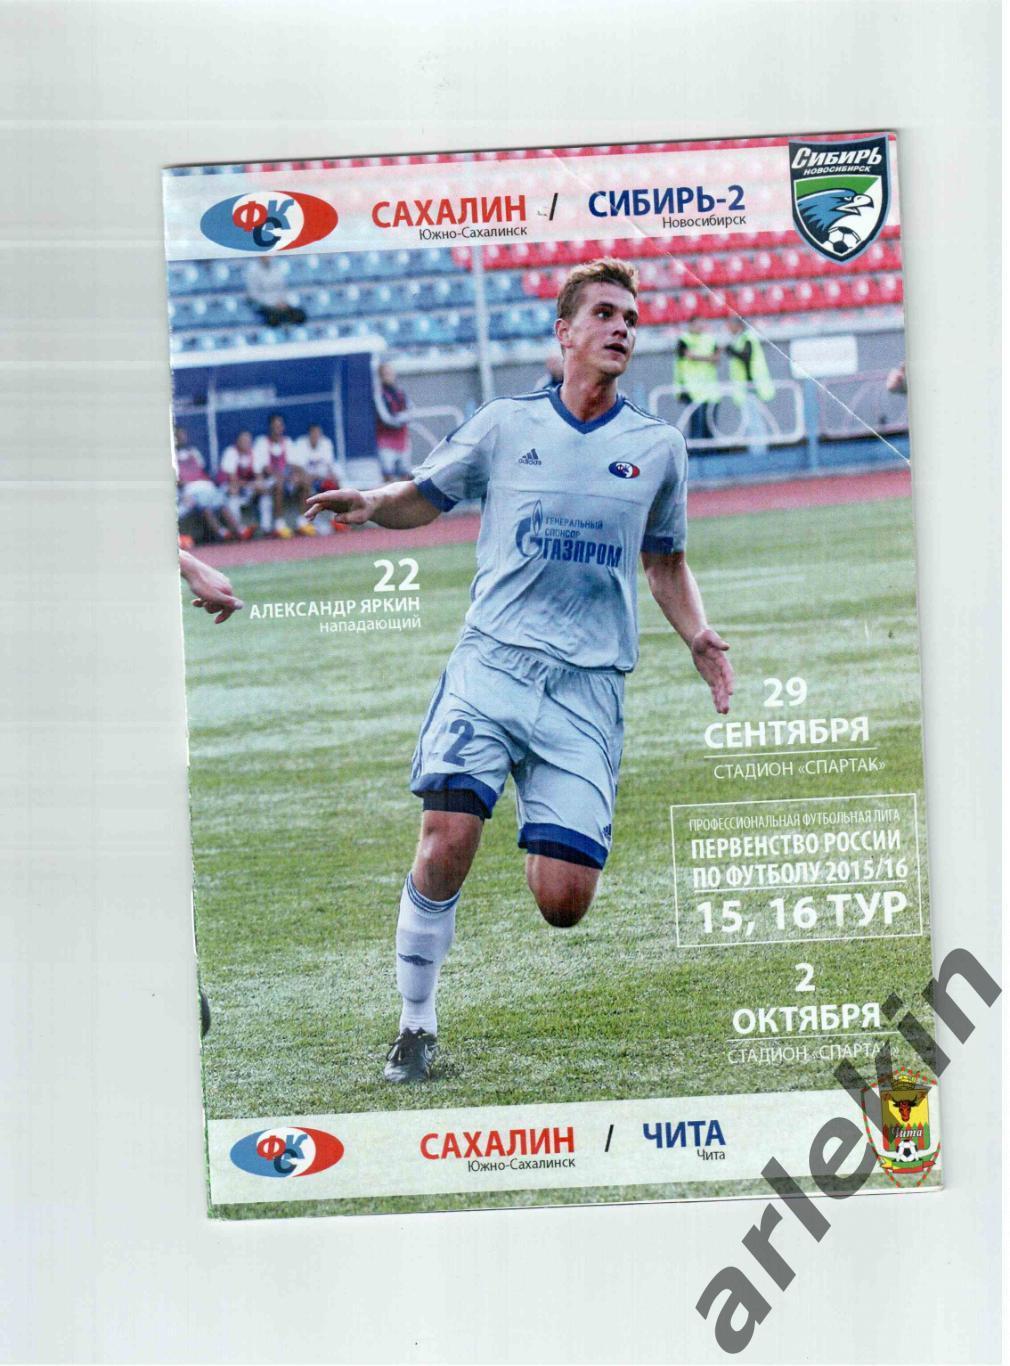 Сахалин Южно-Сахалинск - Сибирь-2 Новосибирск / ФК Чита 29.09 и 02.10.2015 г.